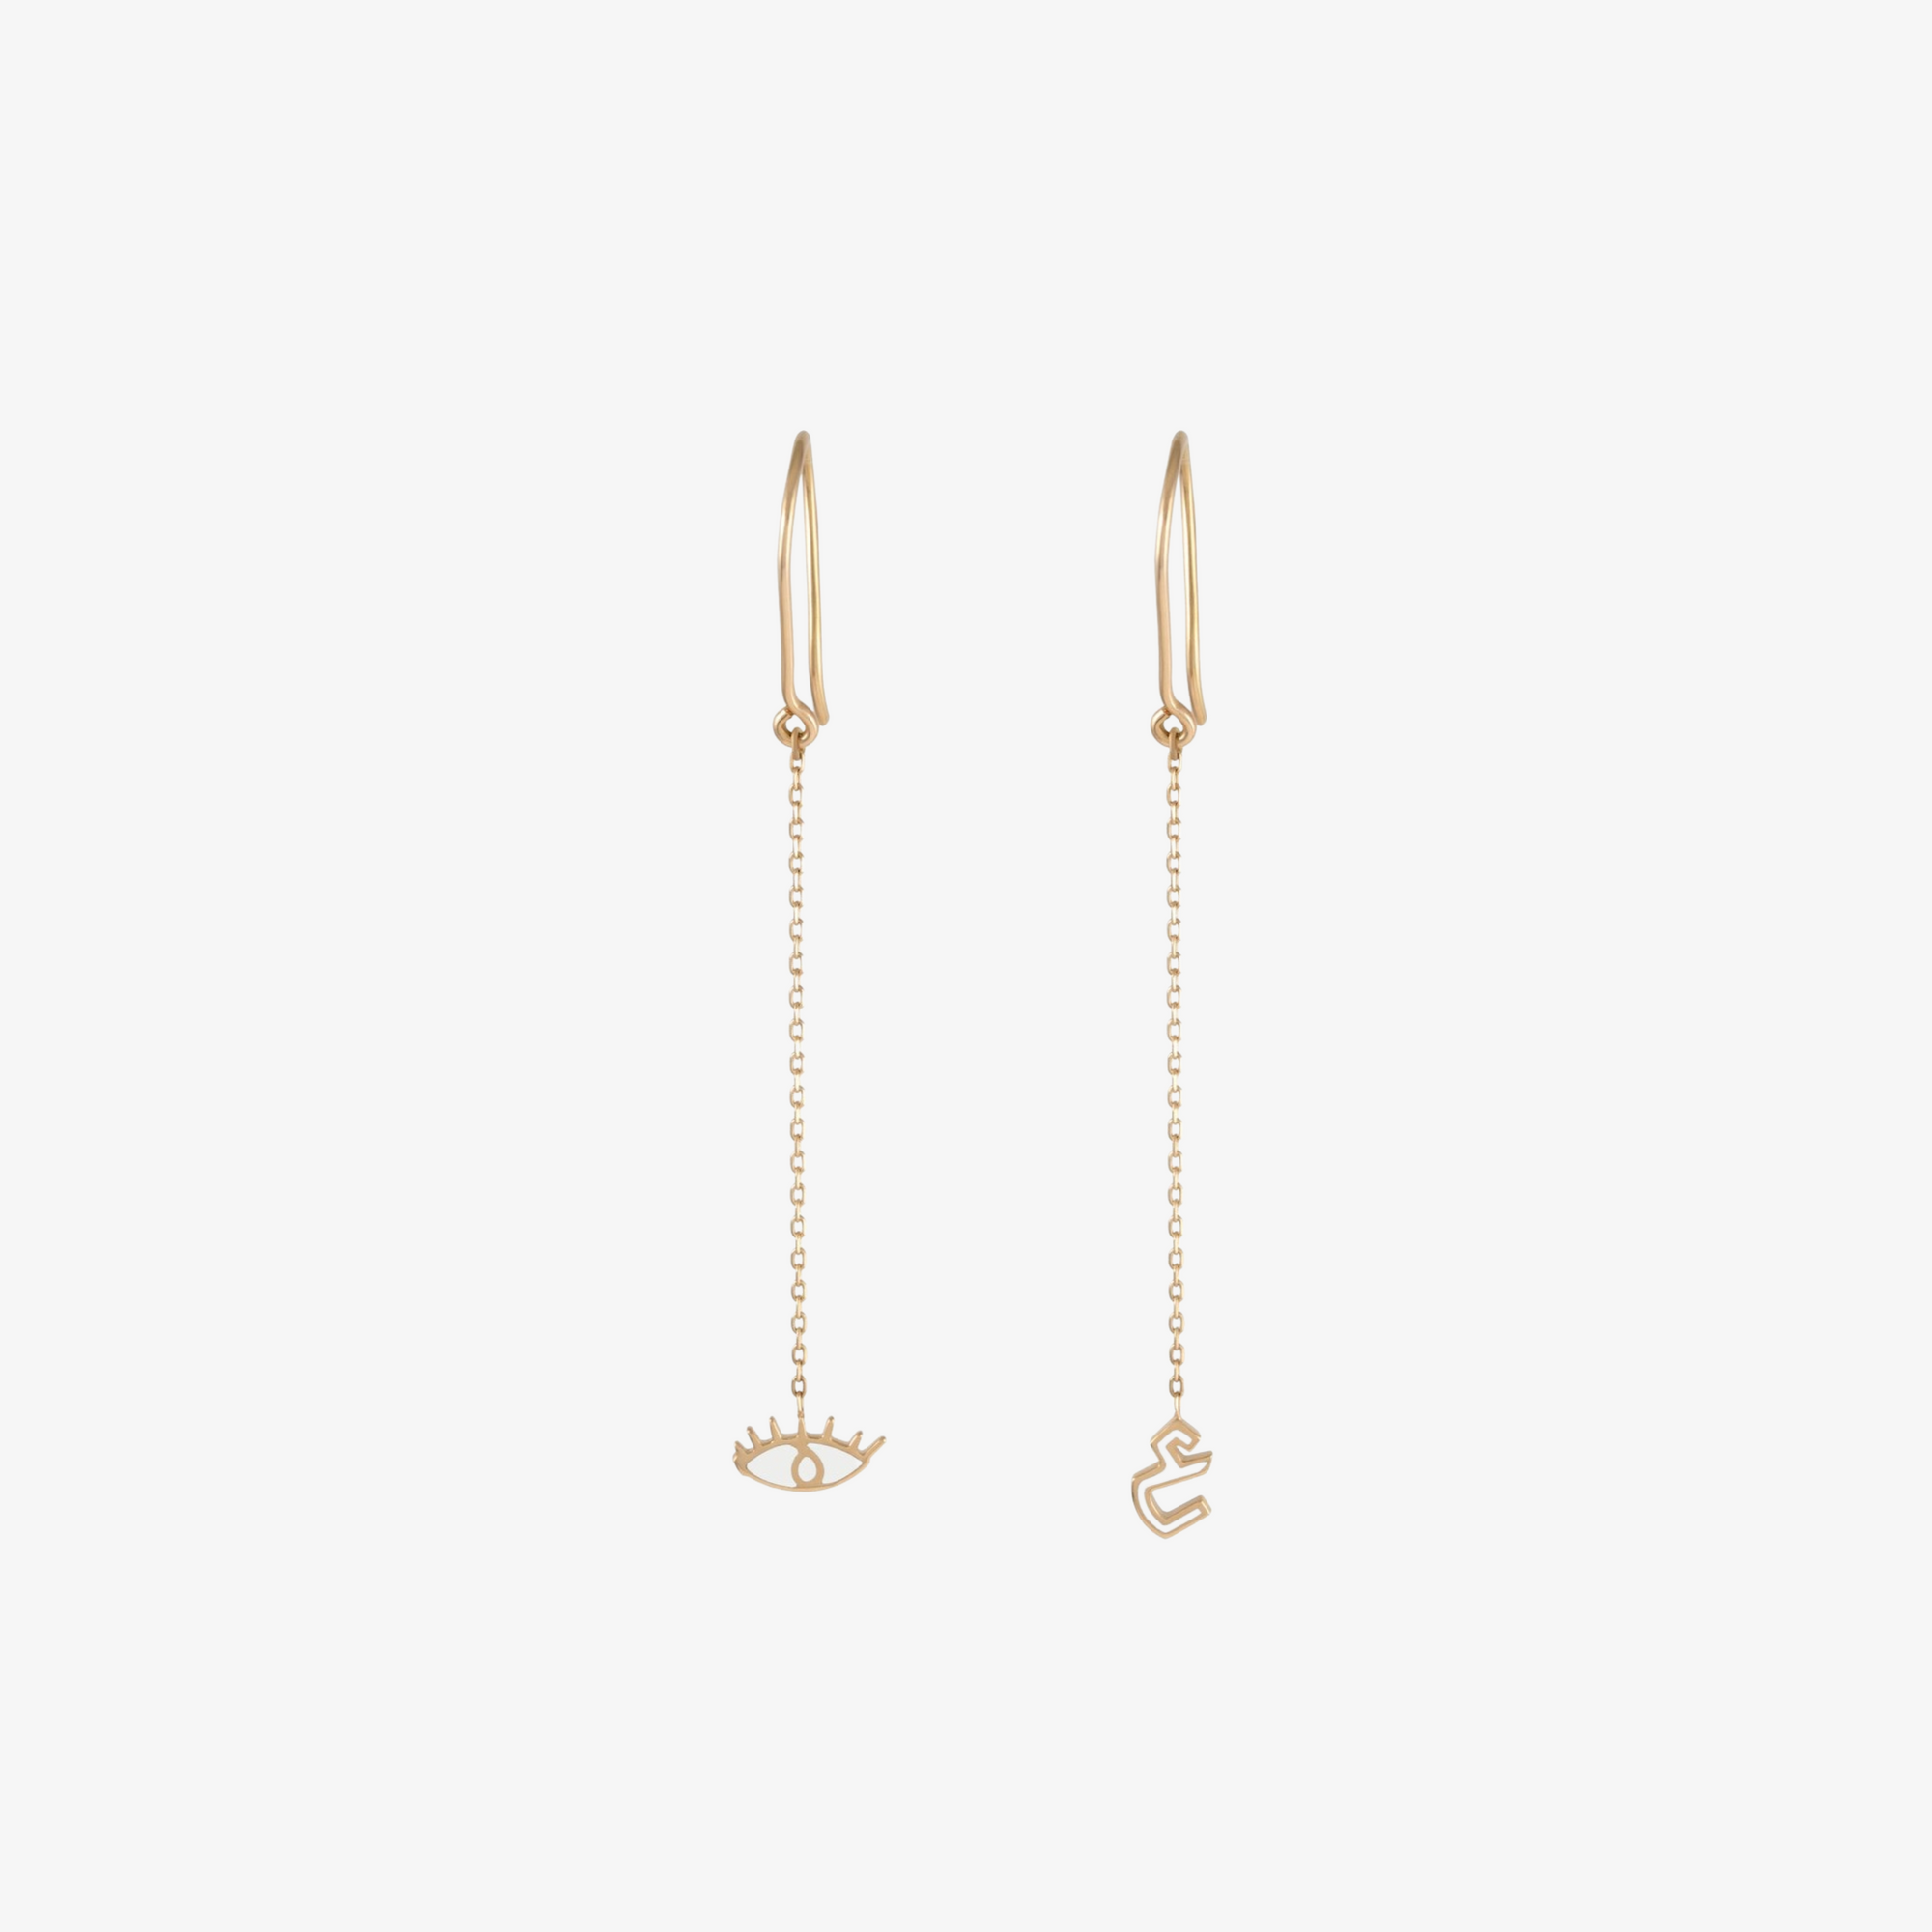 OULA - Gold & Enamel Letter Earrings